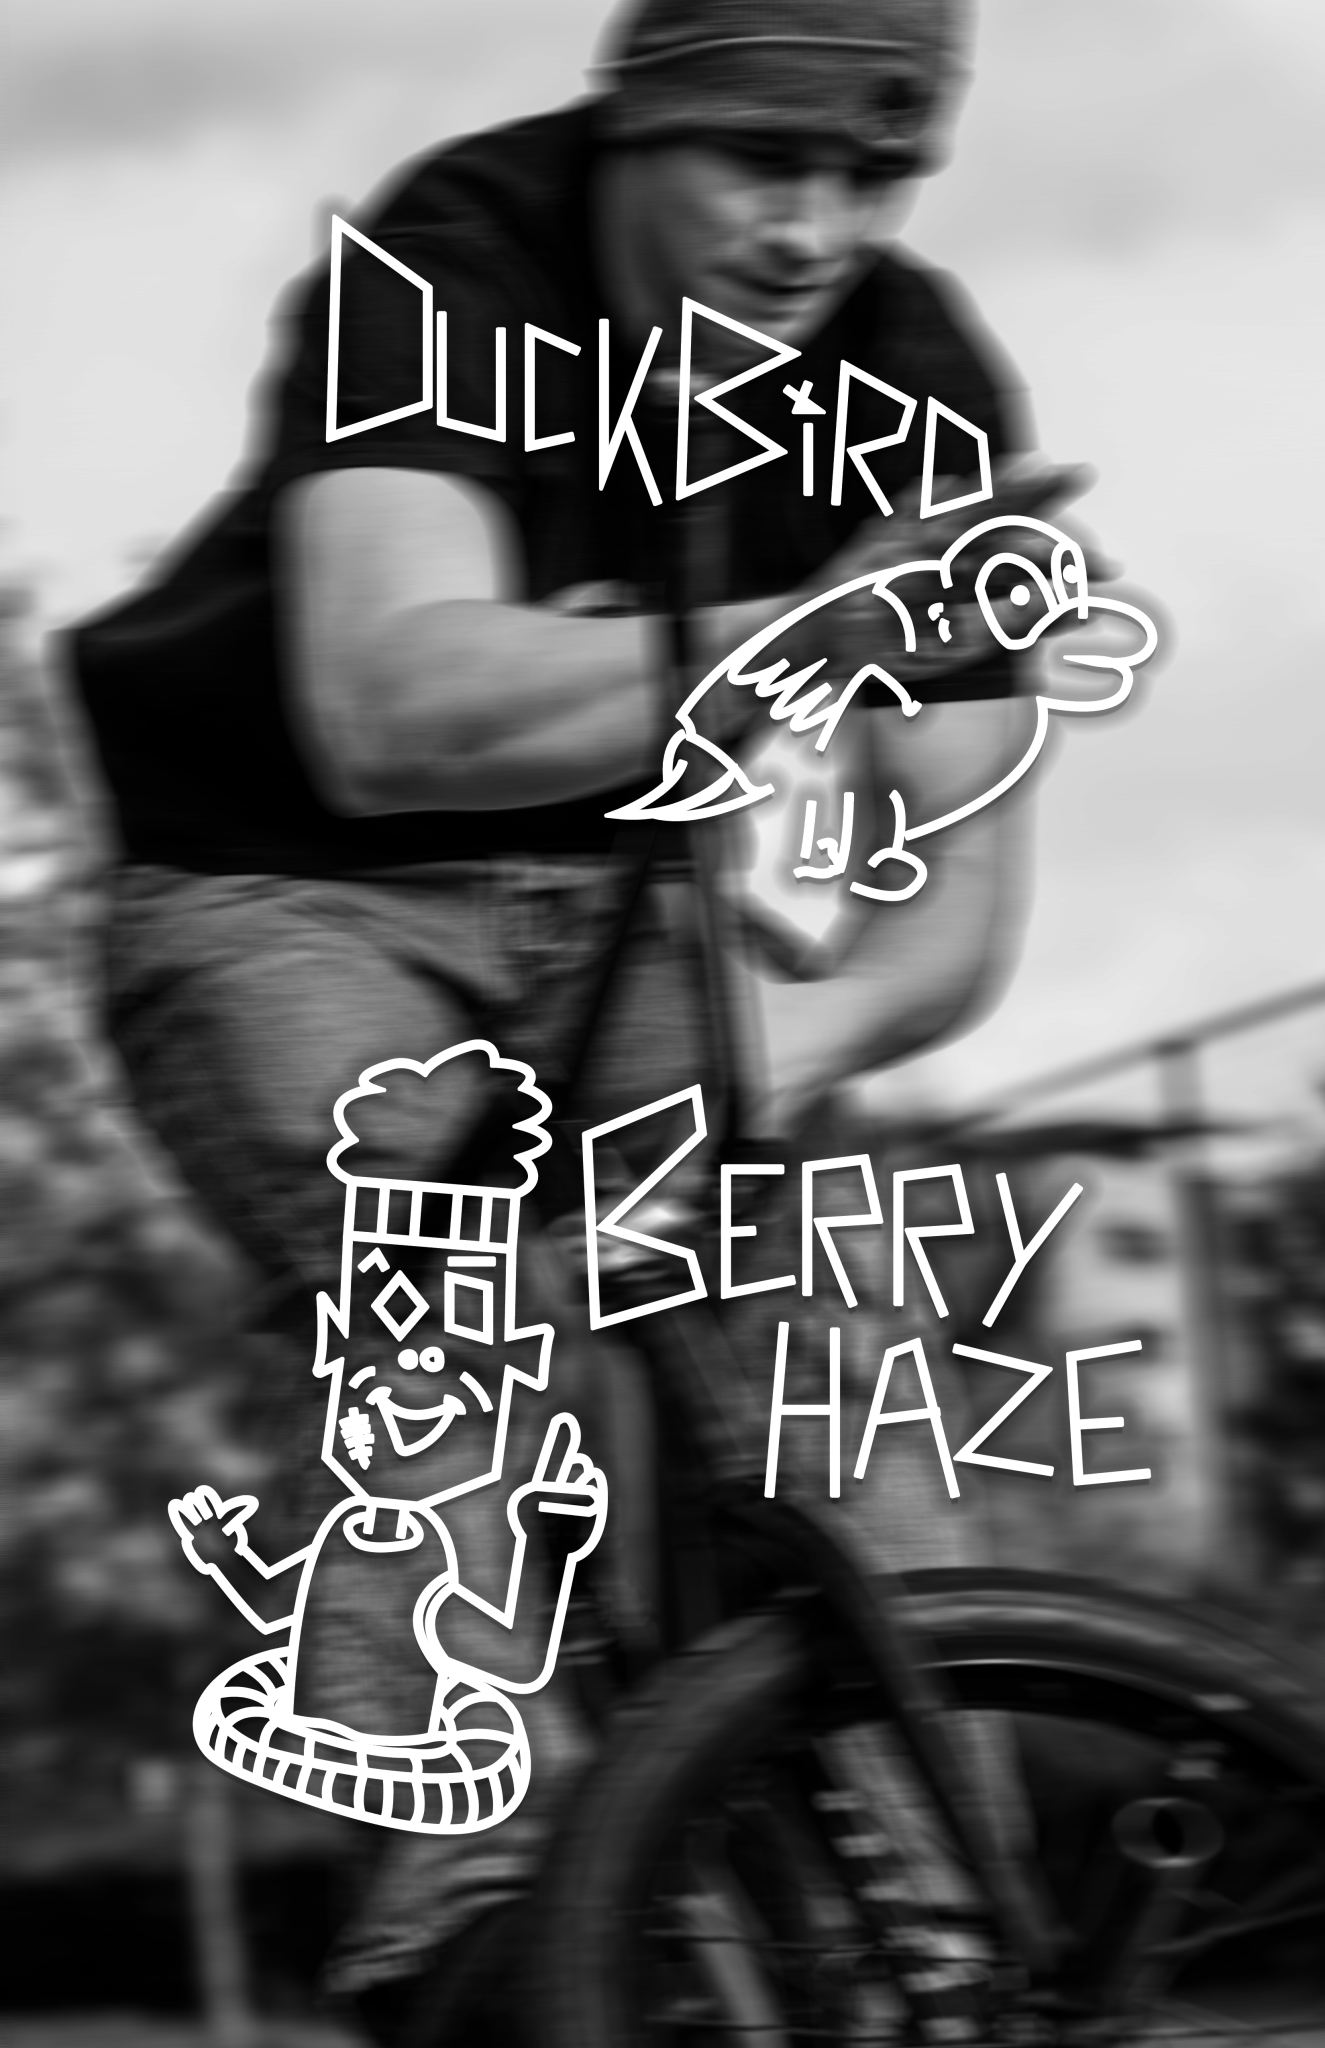 Duckbird x Berry Haze - NELS.